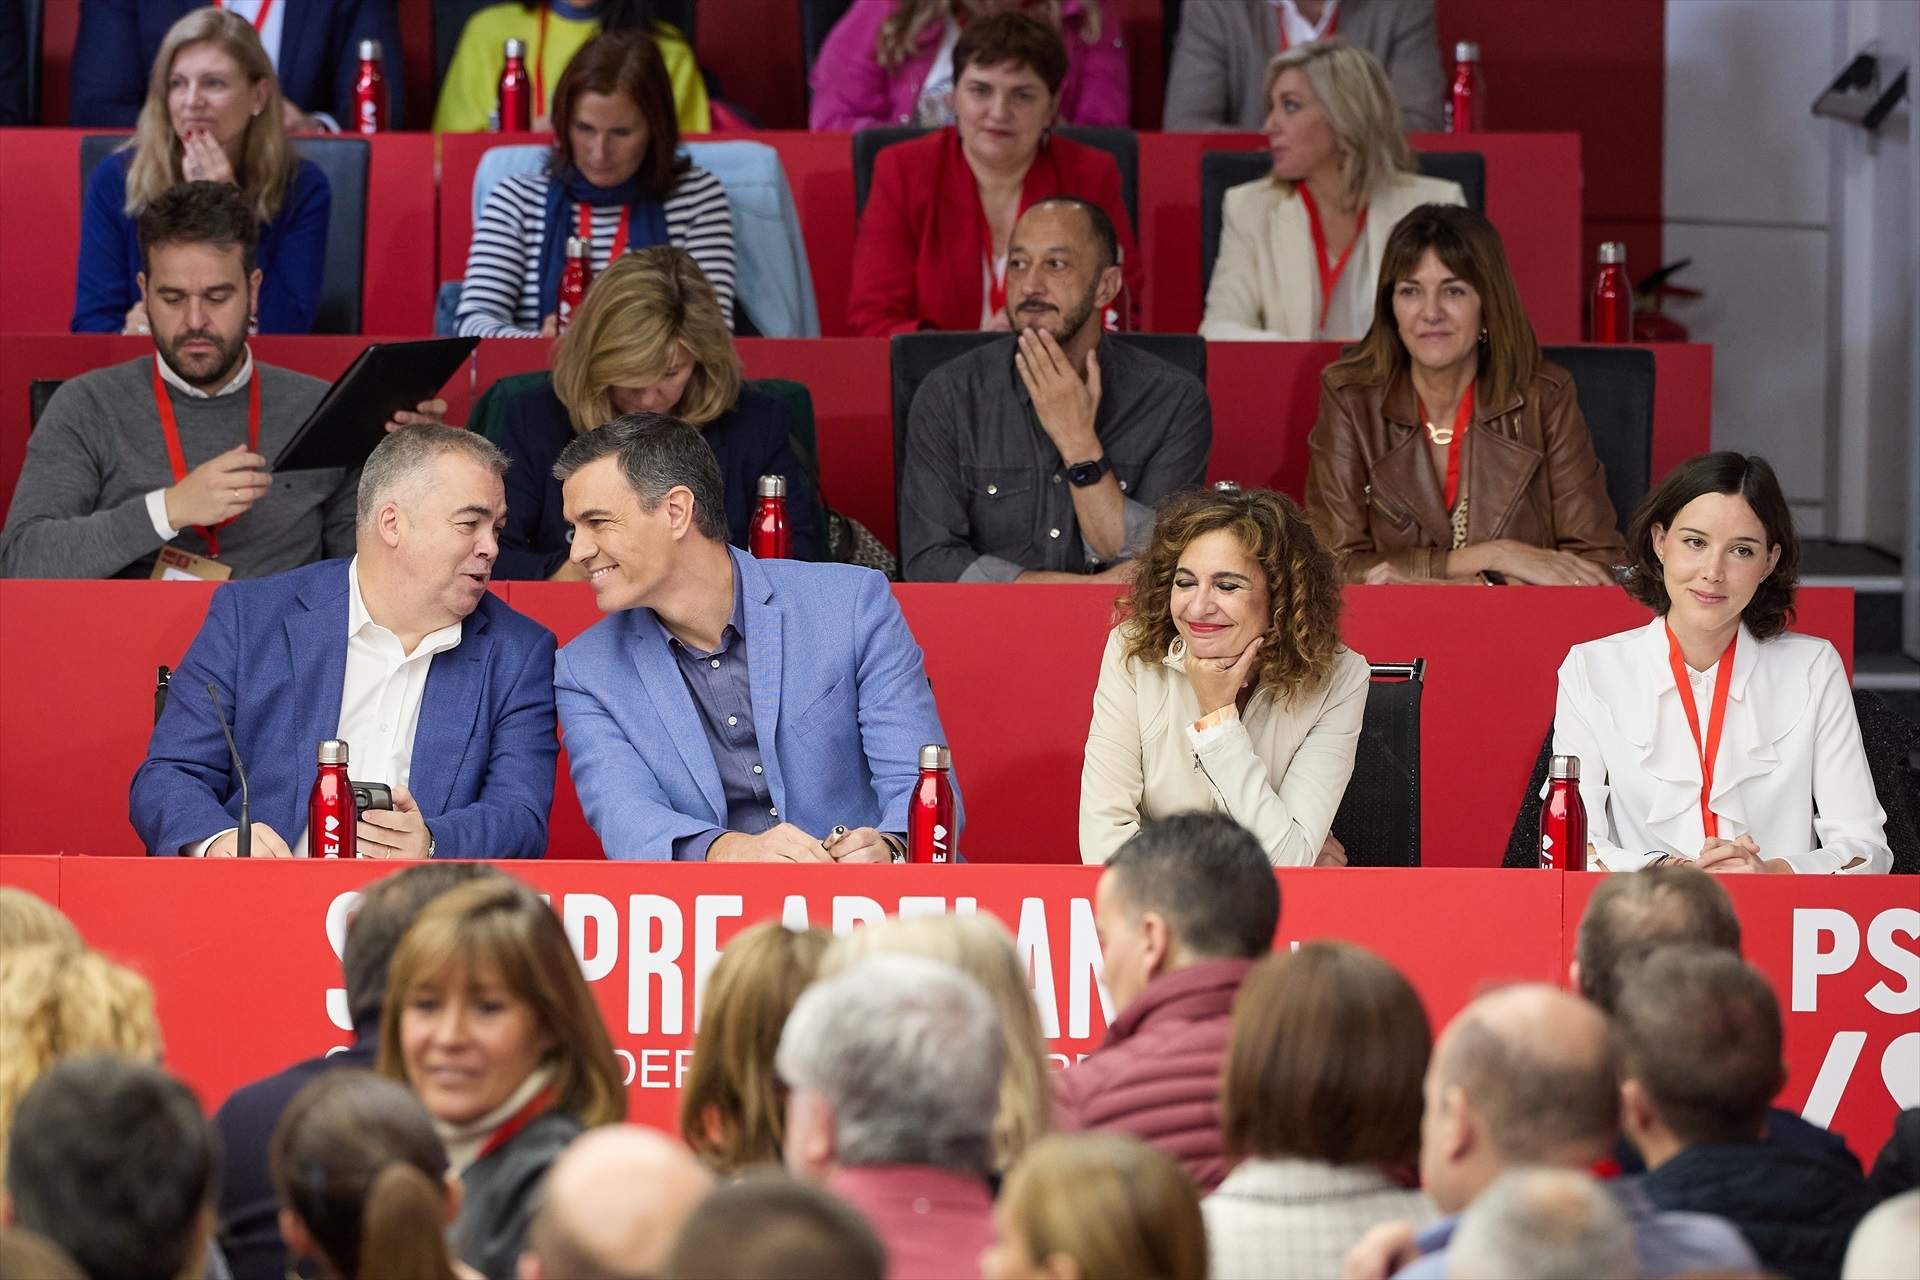 El PSOE es bolca amb Pedro Sánchez després de la seva carta: "Estem amb tu més que mai"